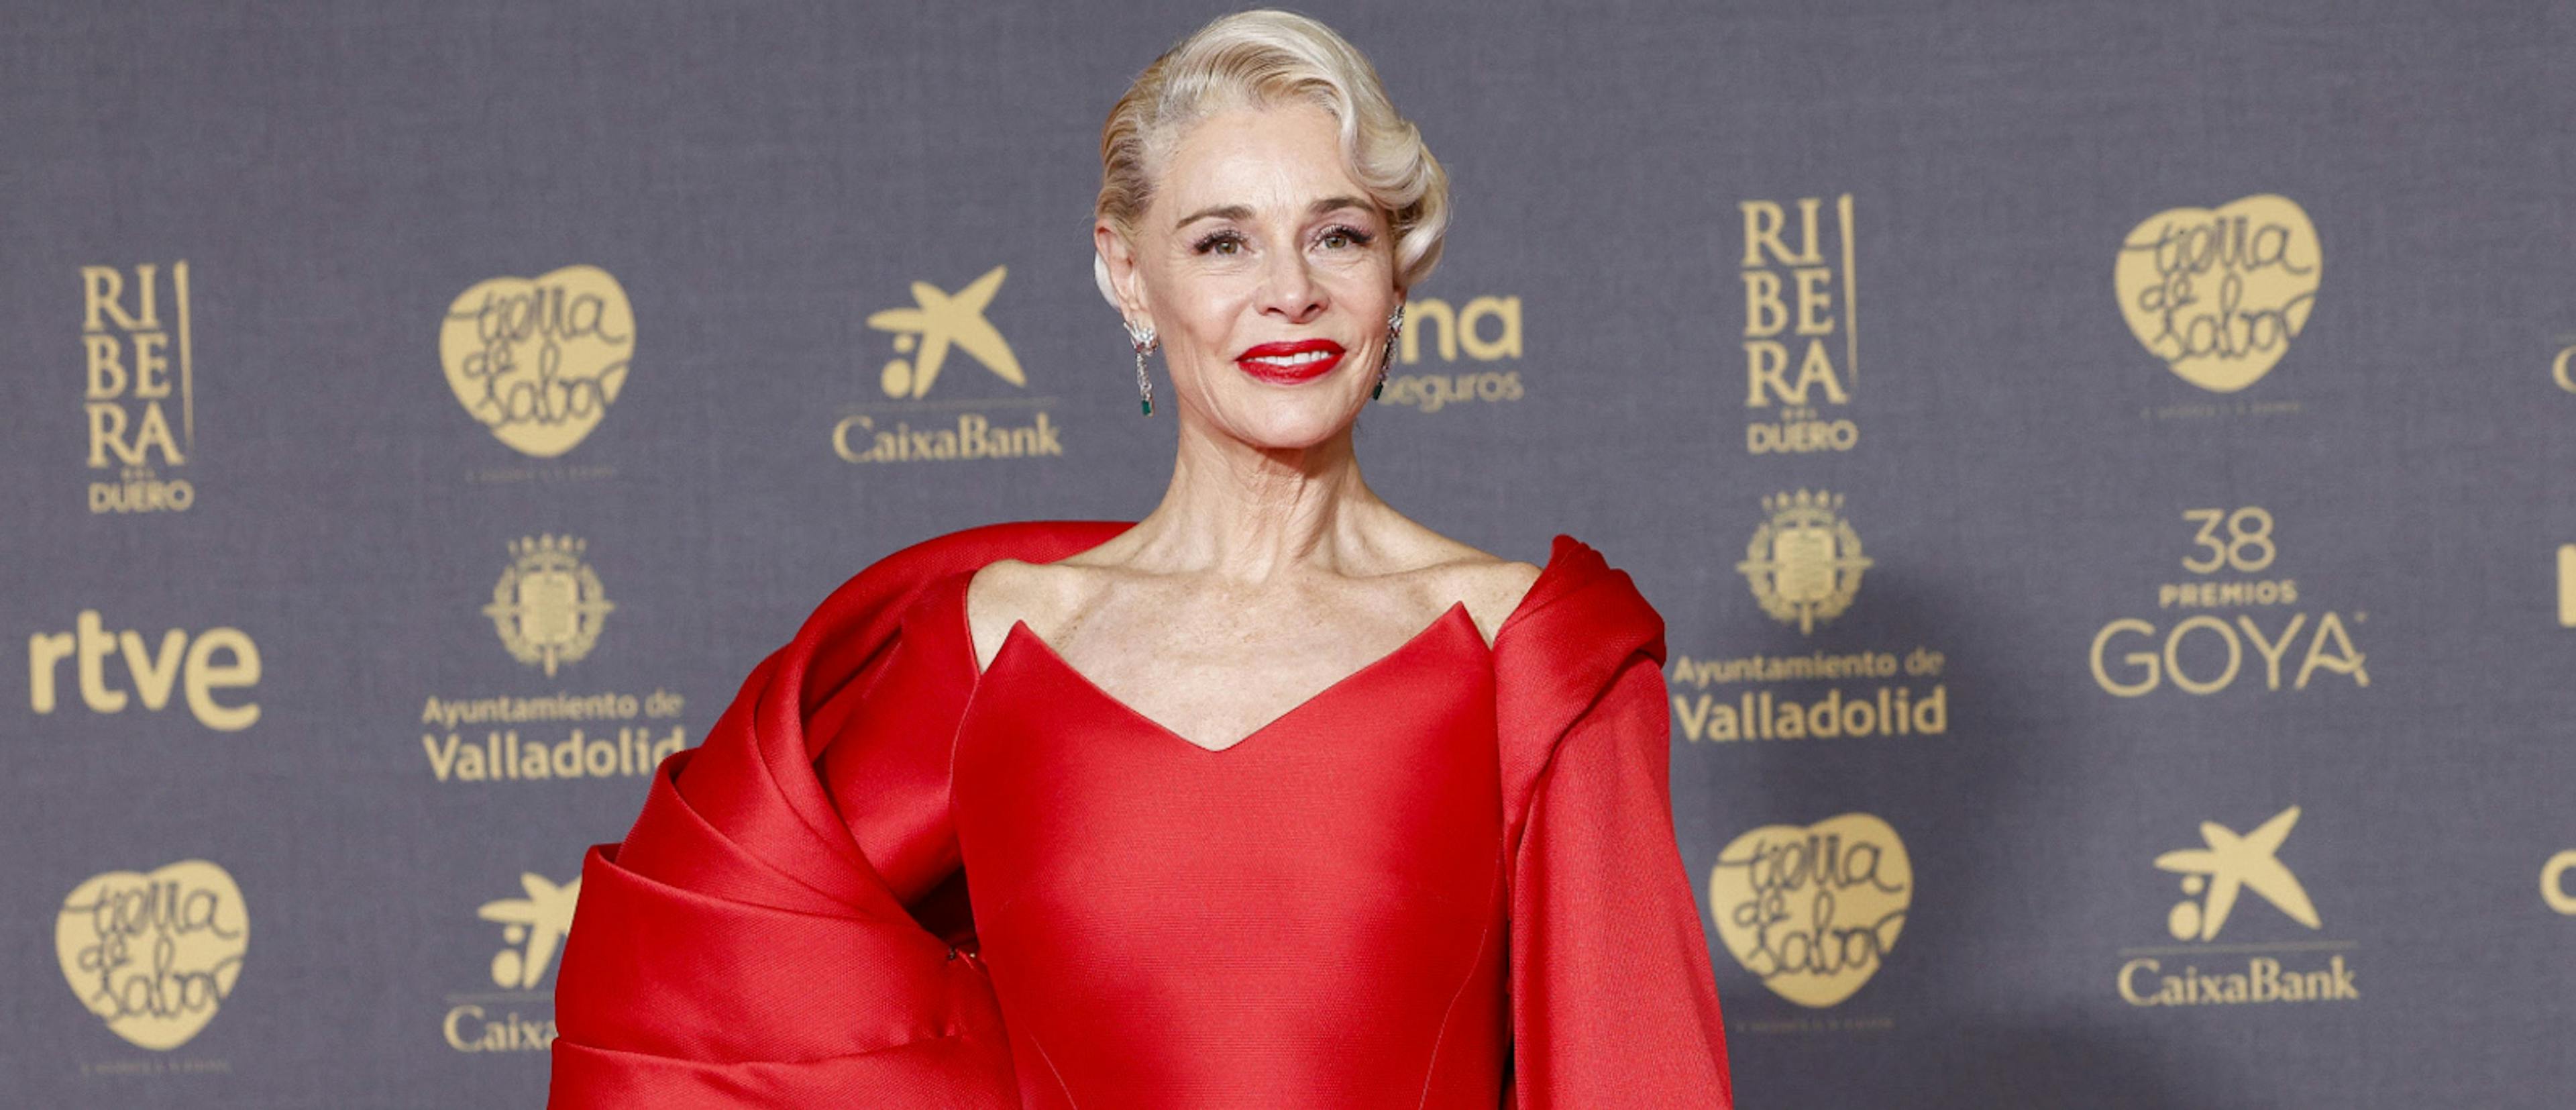 Belén Rueda en la alfombra roja de la 38 edición de los Premios Goya